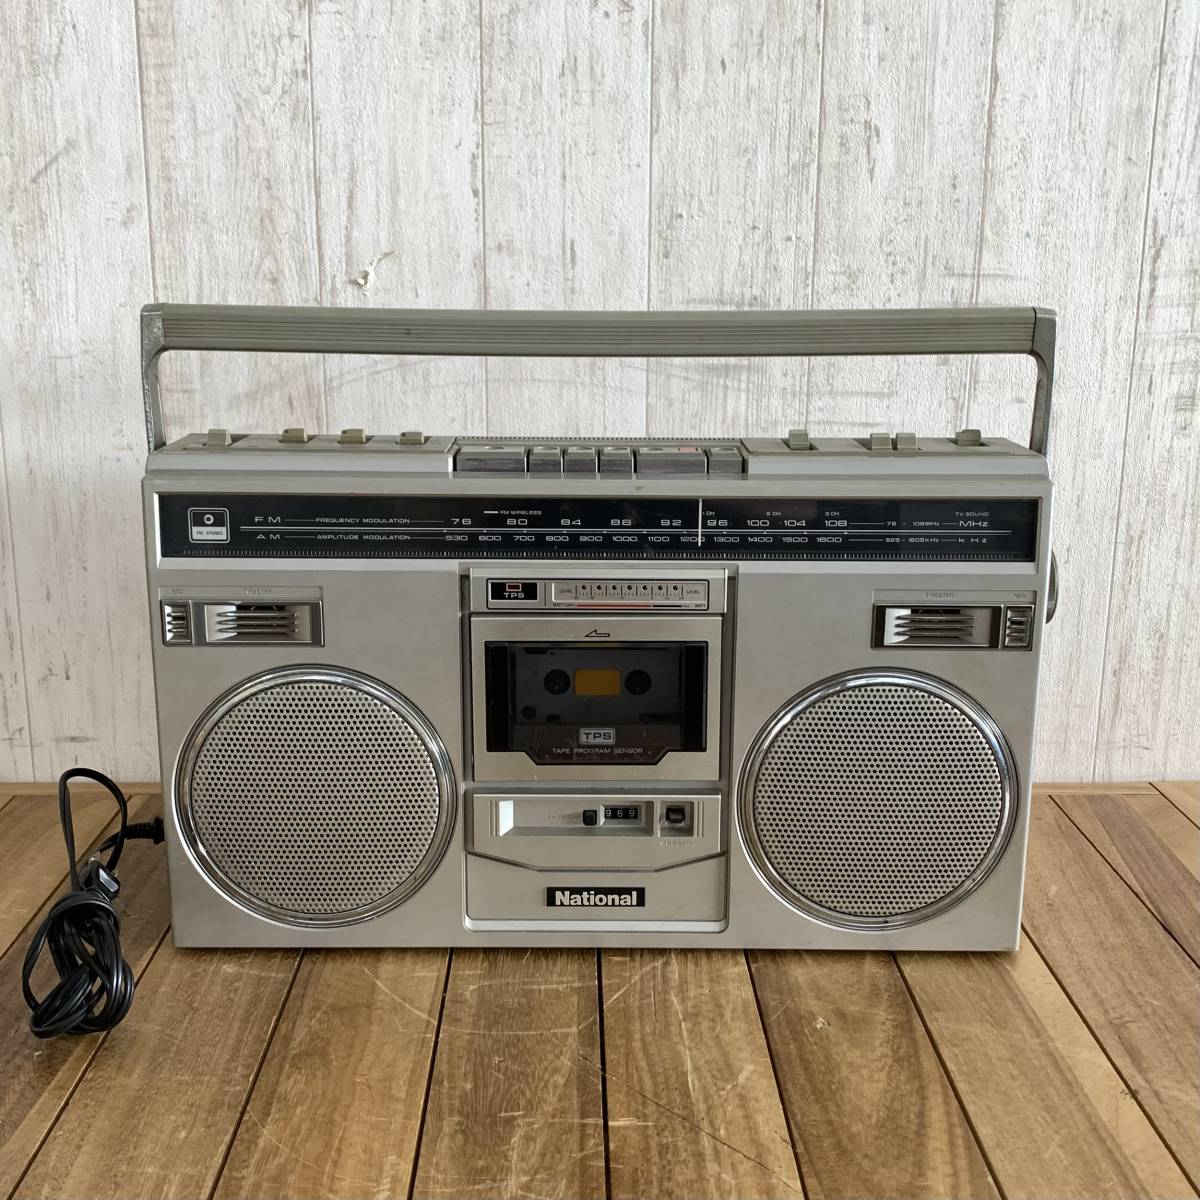 ▼【通電OK】National ナショナル RX-5100 ラジカセ ラジオカセット ラジオ オーディオ機器 グレーの画像1